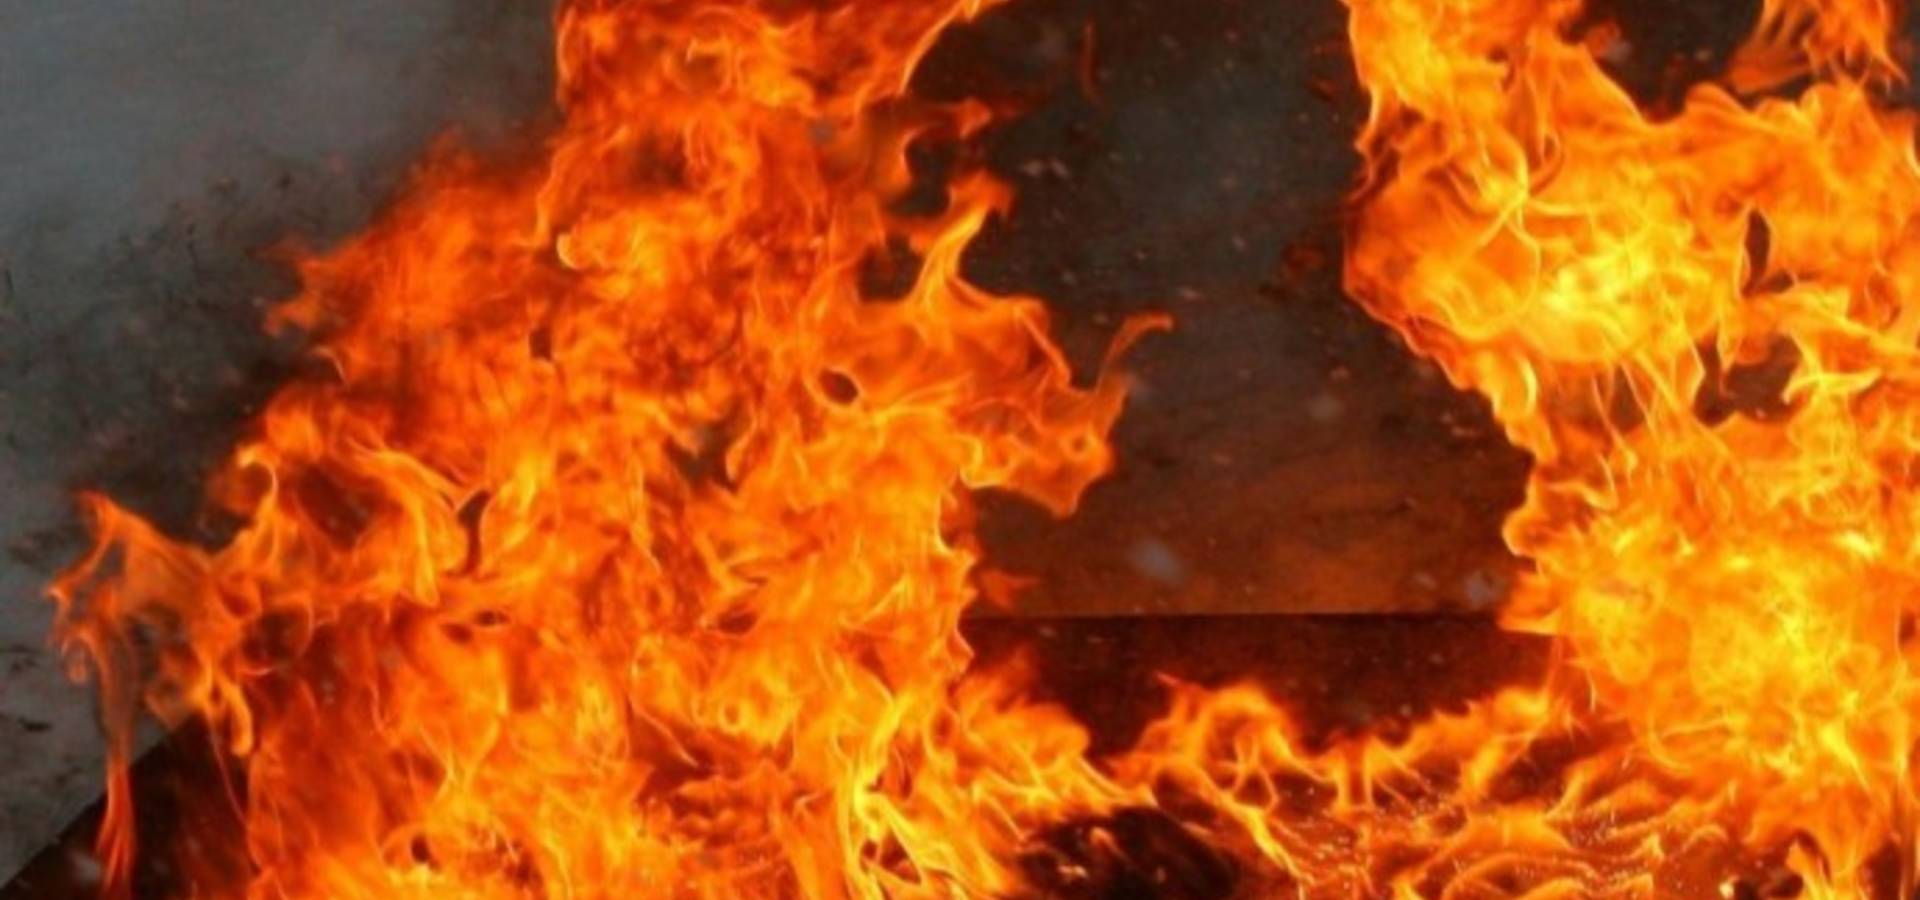 У Хмільницькому районі у пожежі загинув літній чоловік